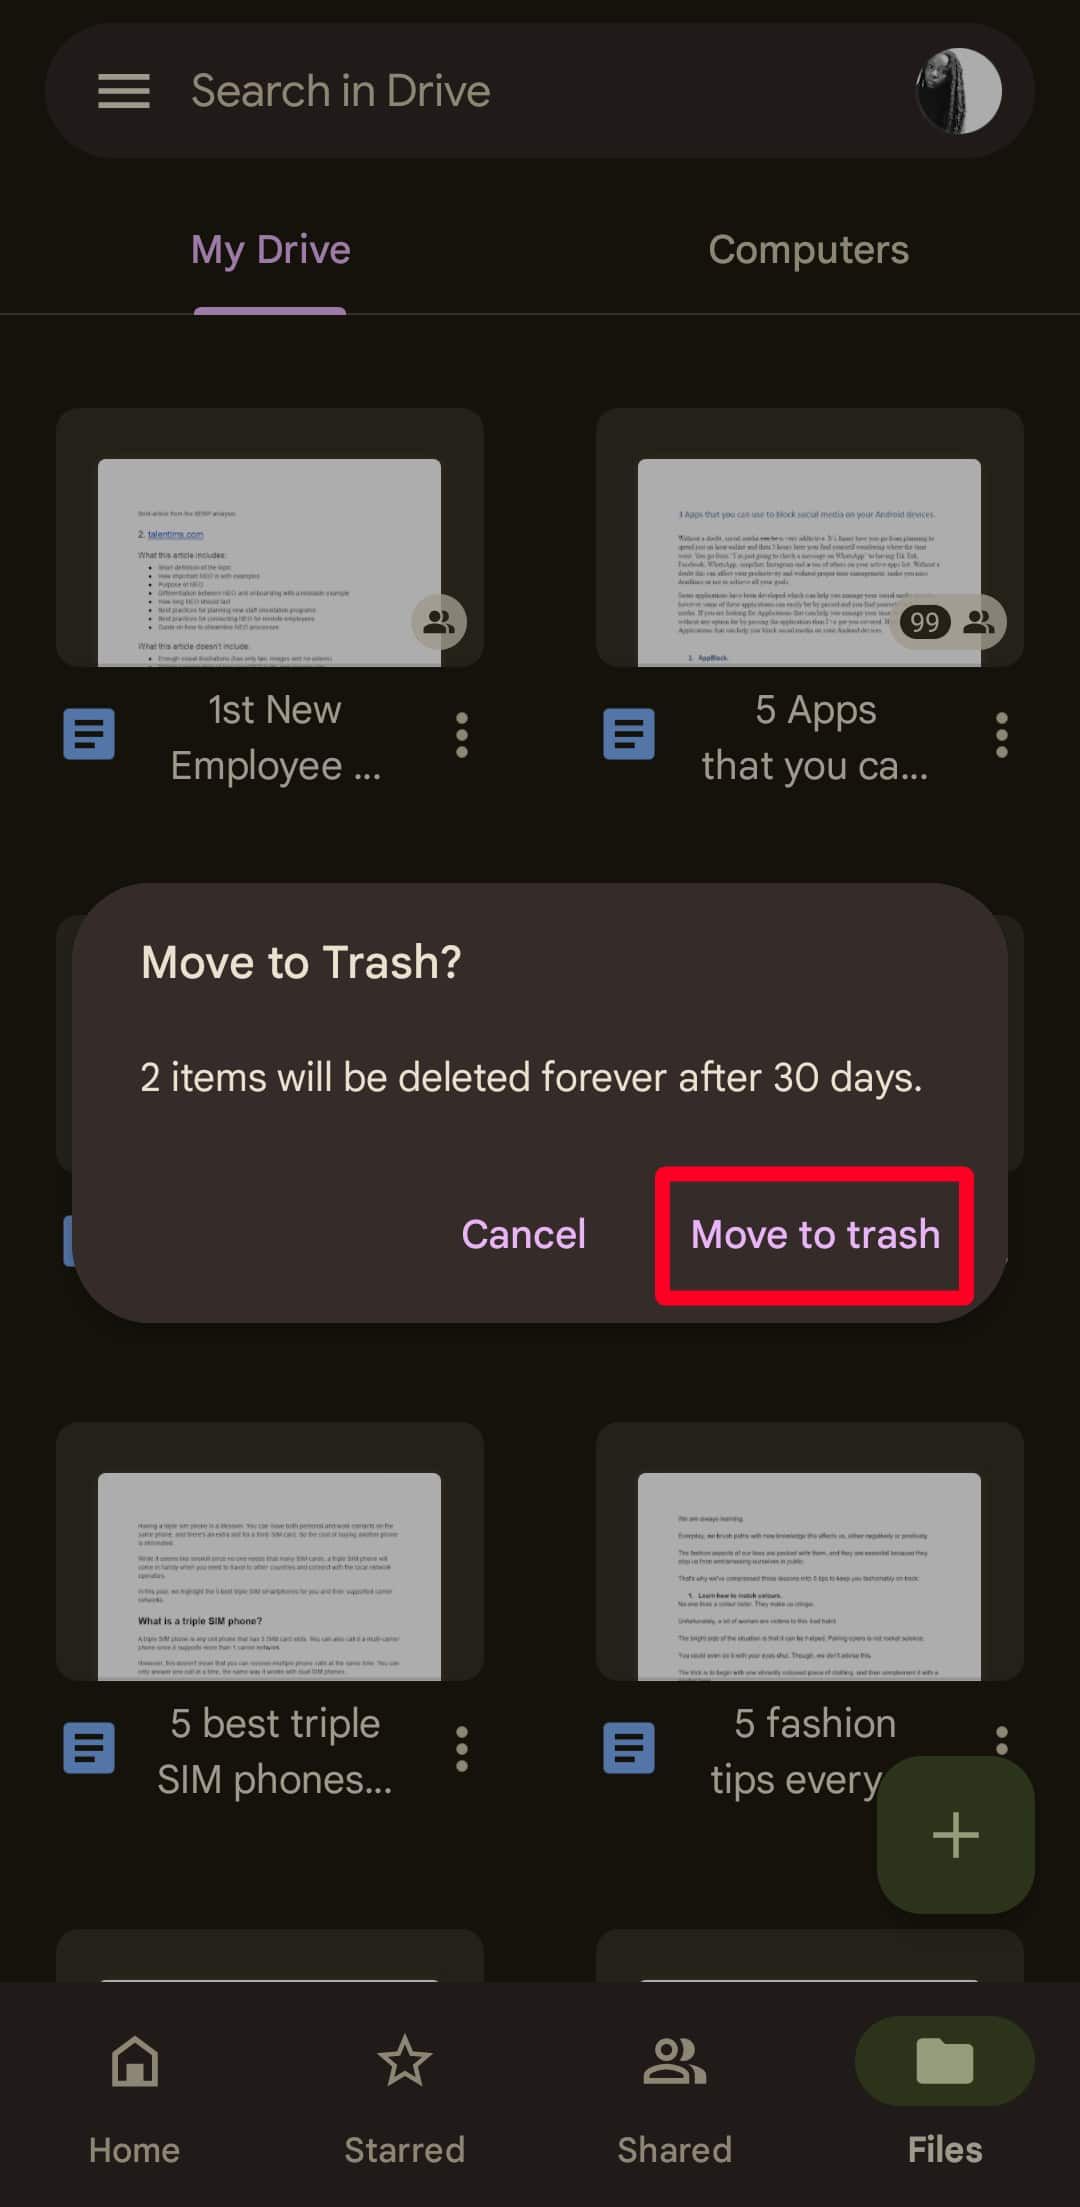 Mover para a lixeira pop-up de confirmação no aplicativo móvel do Google Drive